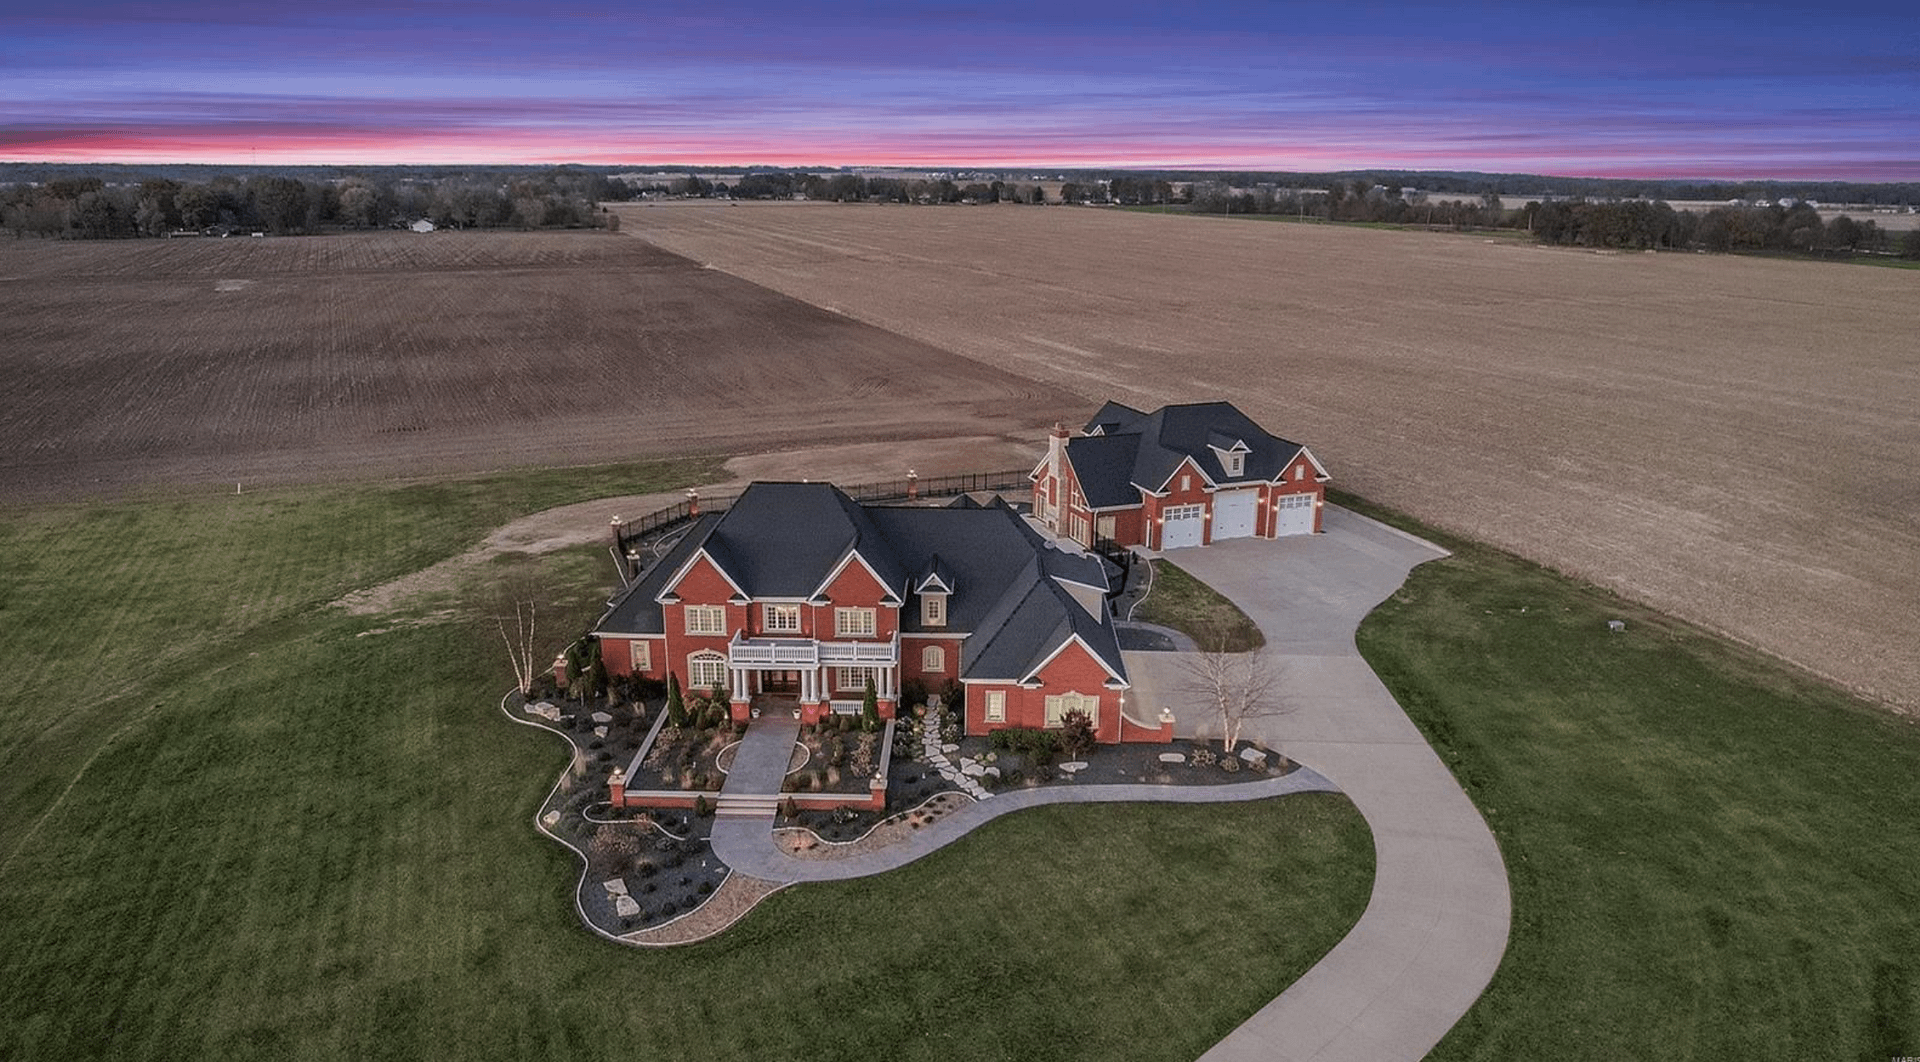 Illinois Estate On 7 Acres For $1.75 Million (PHOTOS)